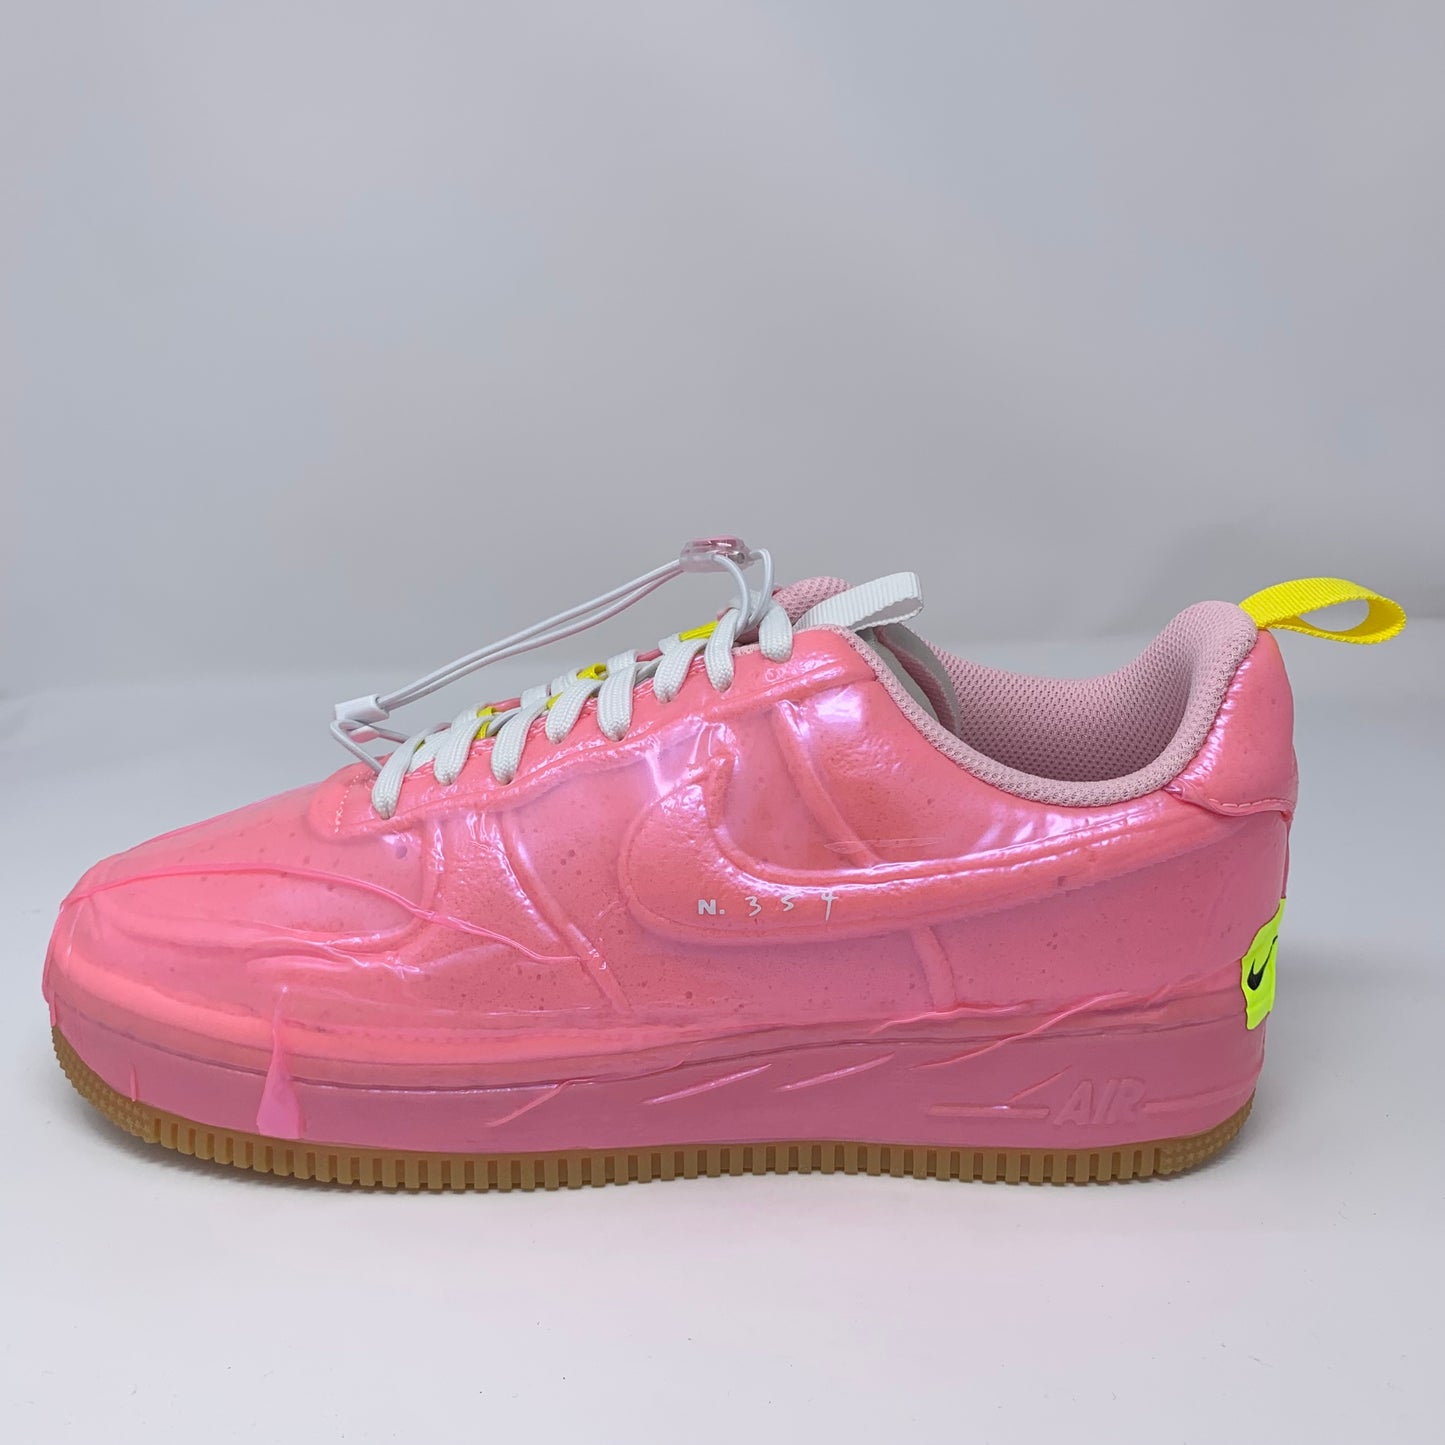 Nike AF1 Low Experimental “Racer Pink”